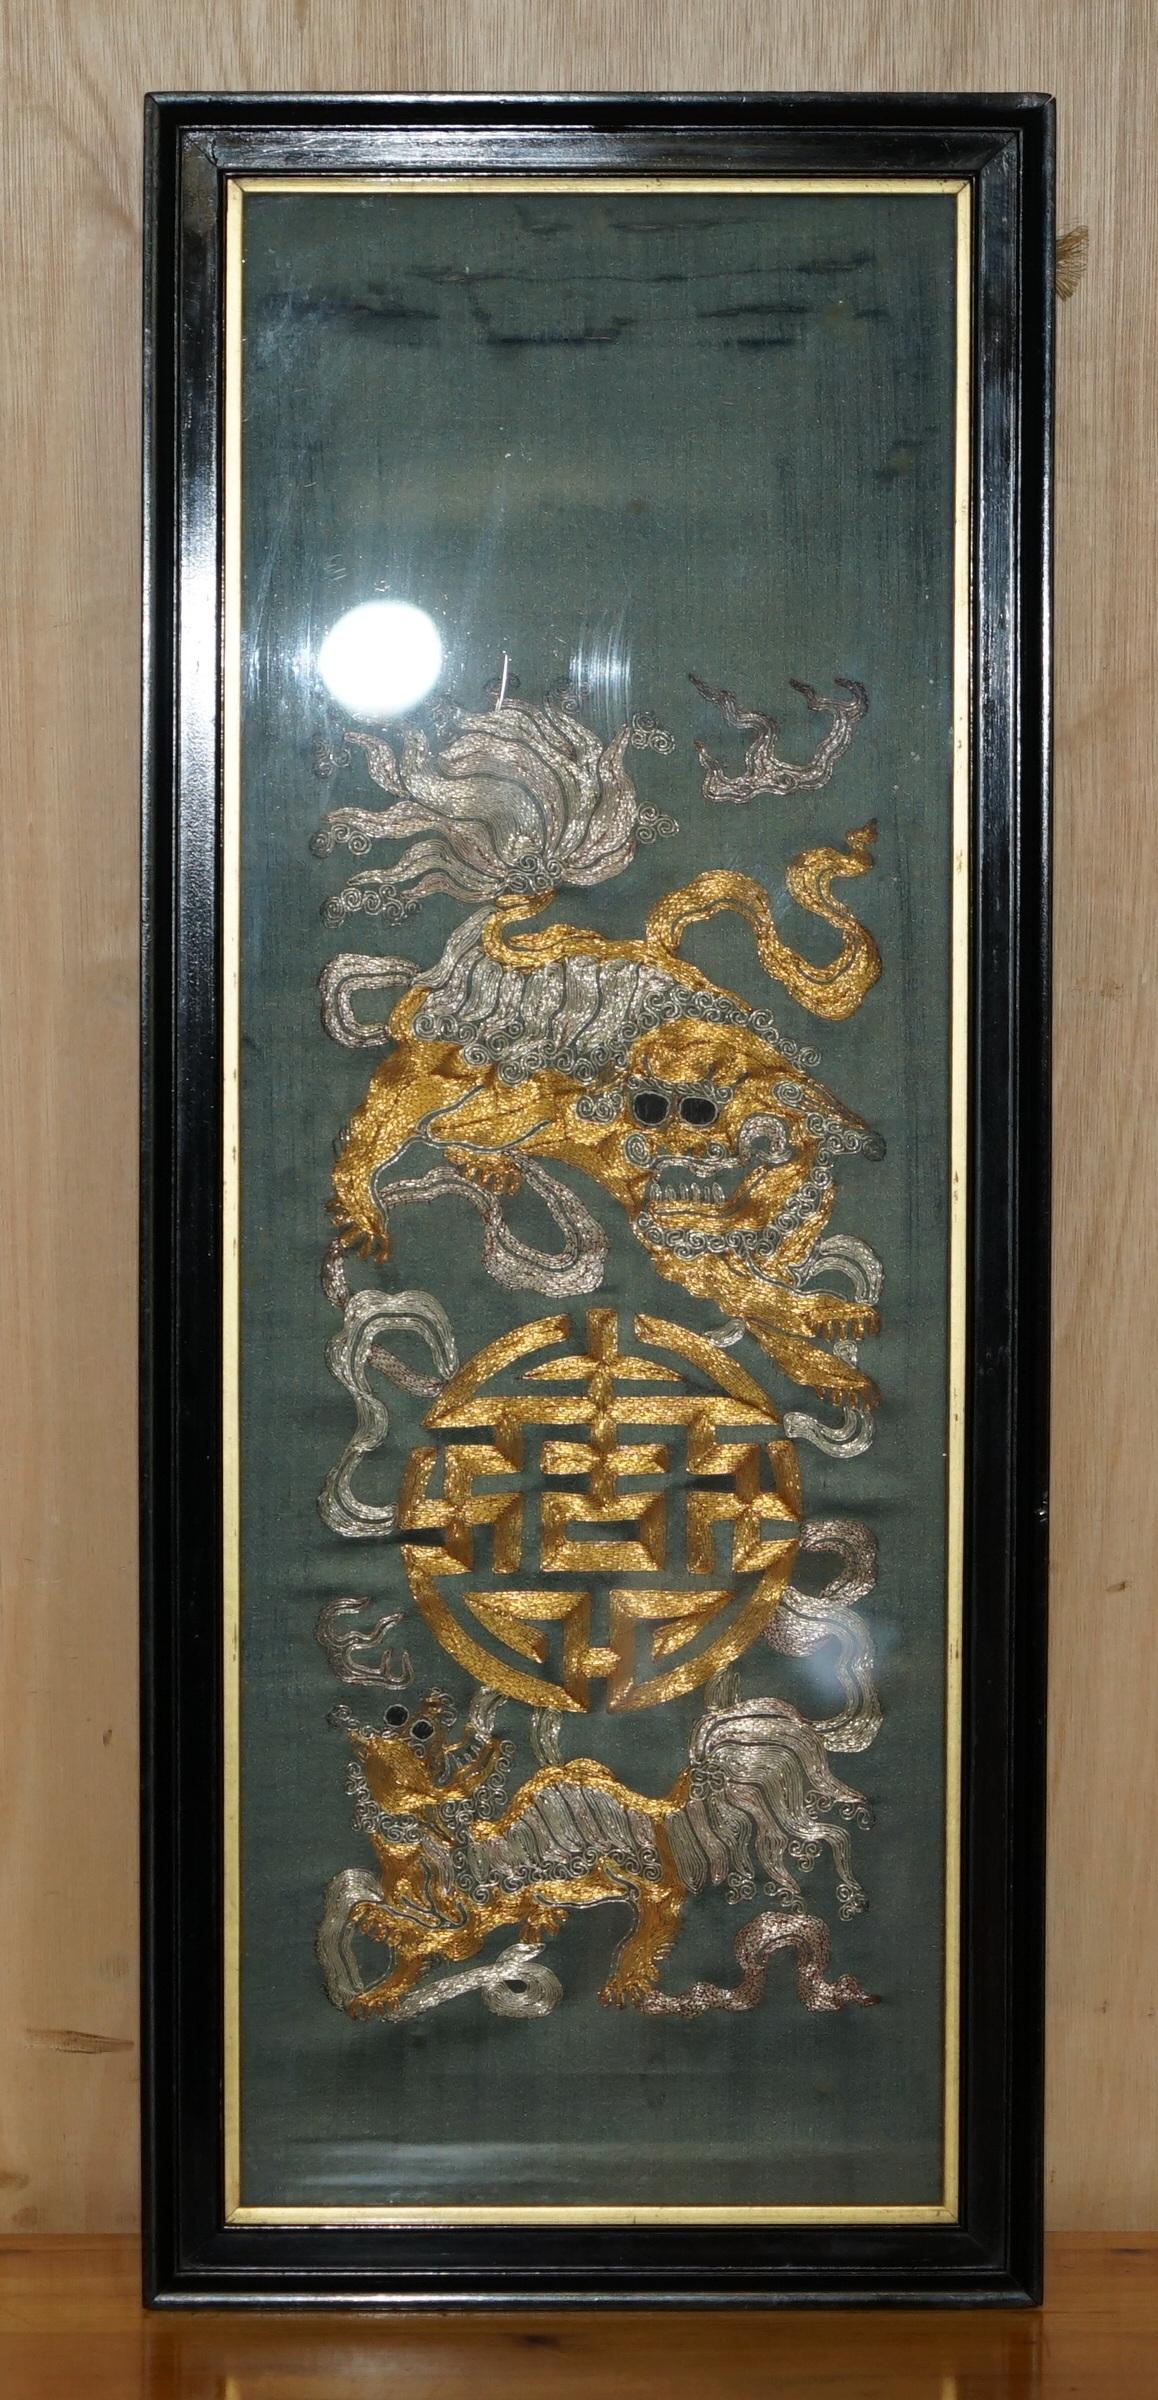 Royal House Antiques

Royal House Antiques freut sich, dieses atemberaubende Paar originaler chinesischer Wandteppiche mit Gold- und Silberfäden auf Seide aus der Zeit um 1880, die chinesische Foo Dogs und Drachen darstellen, zum Verkauf anbieten zu